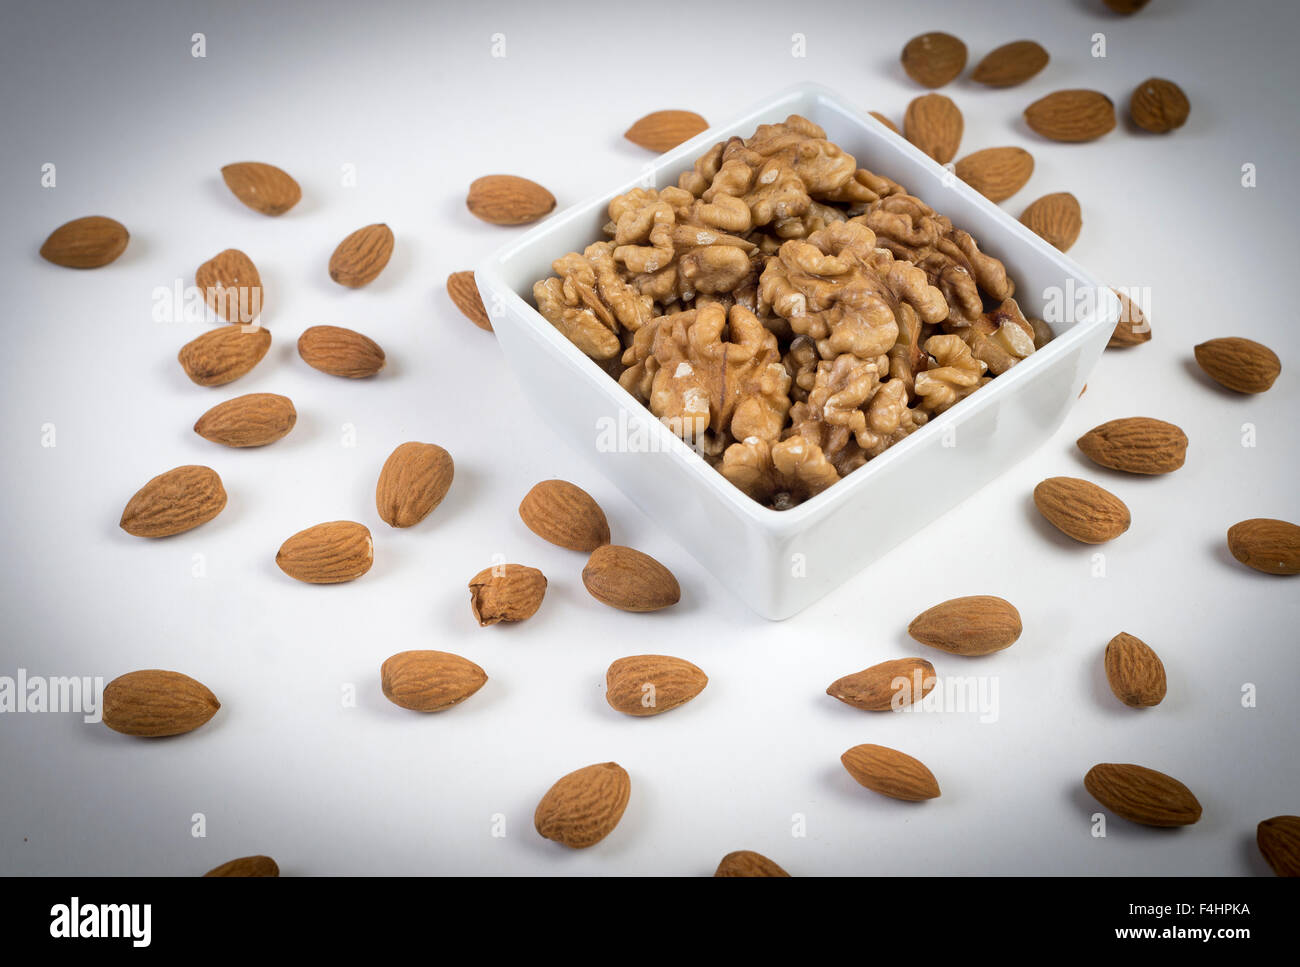 nuts. frutos secos, buena salud y alimentacion. Good Food Stock Photo